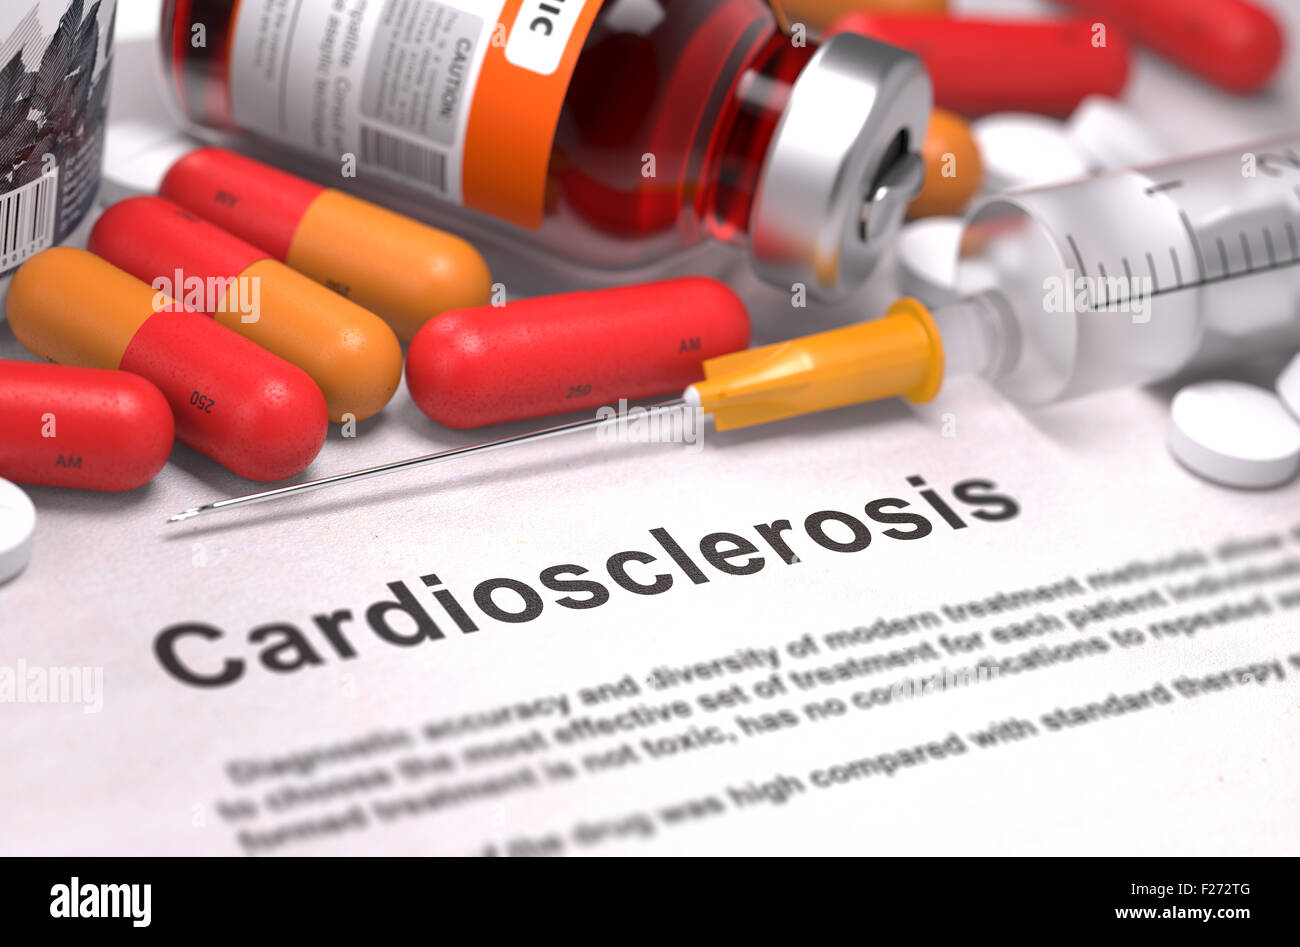 Cardiosclerosis Diagnosis. Medical Concept. Stock Photo